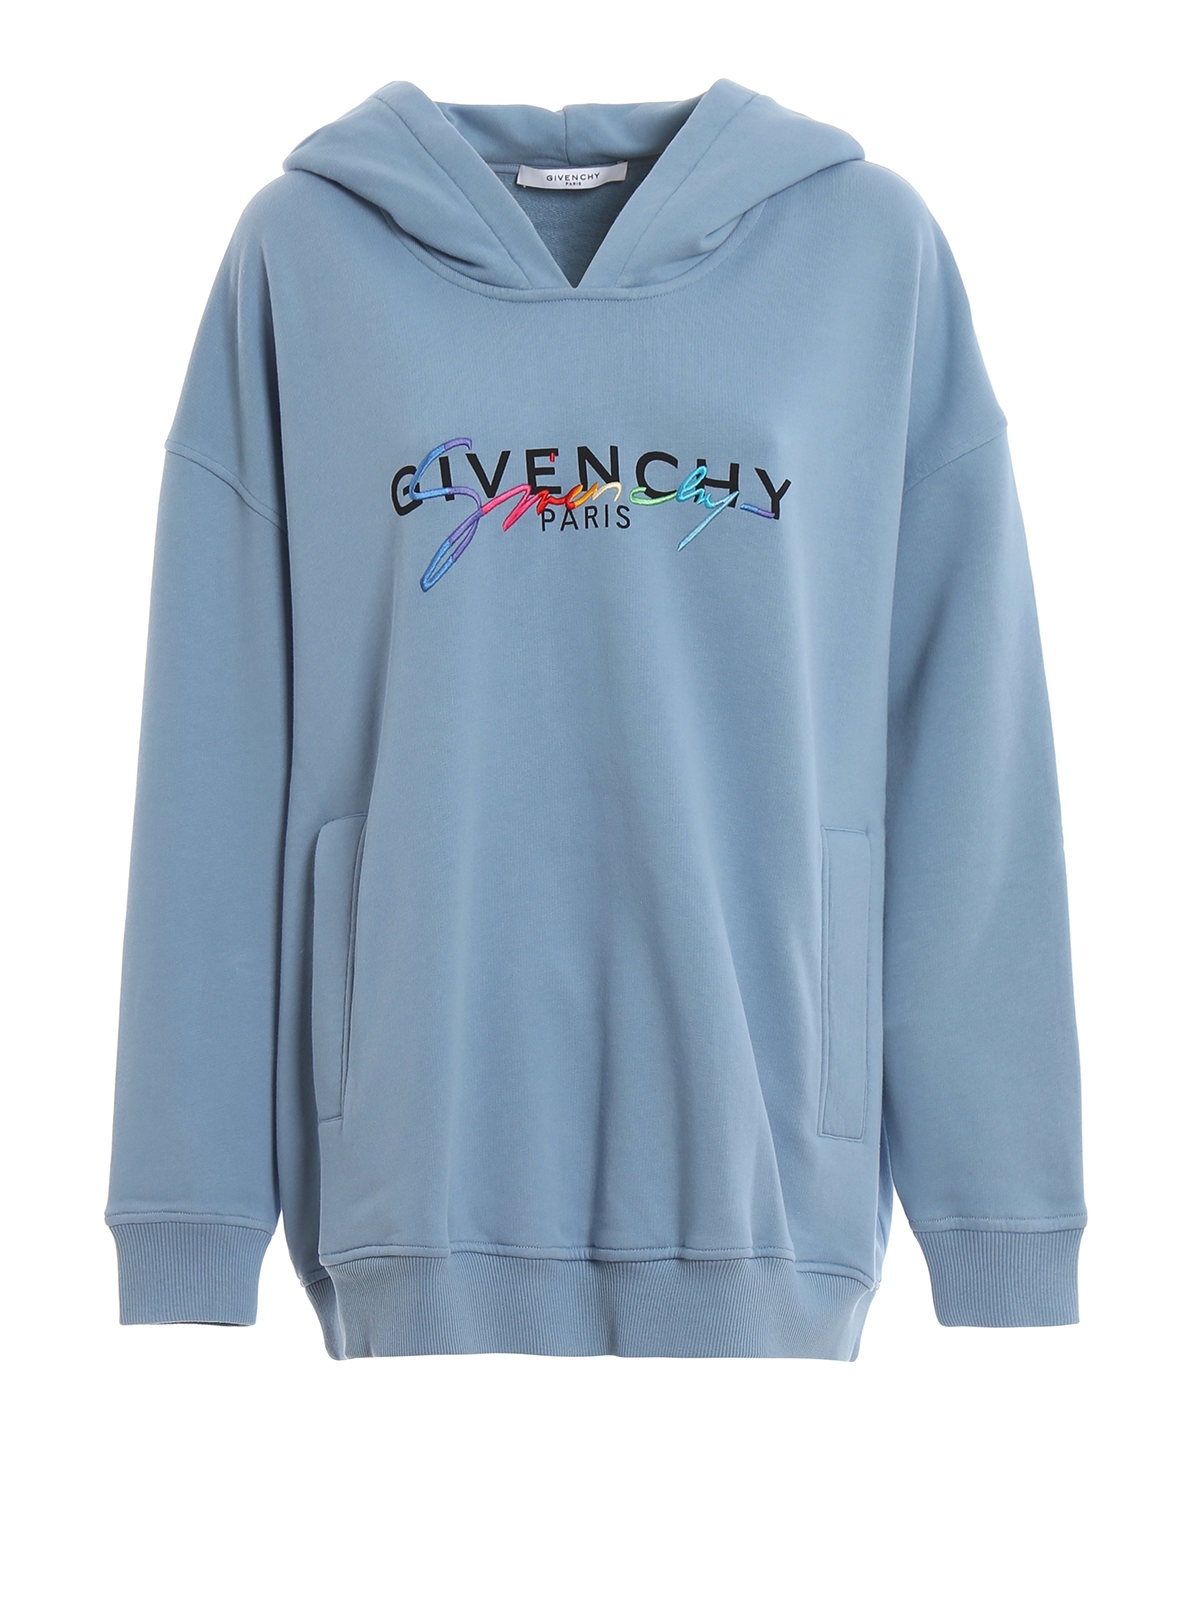 givency hoodie